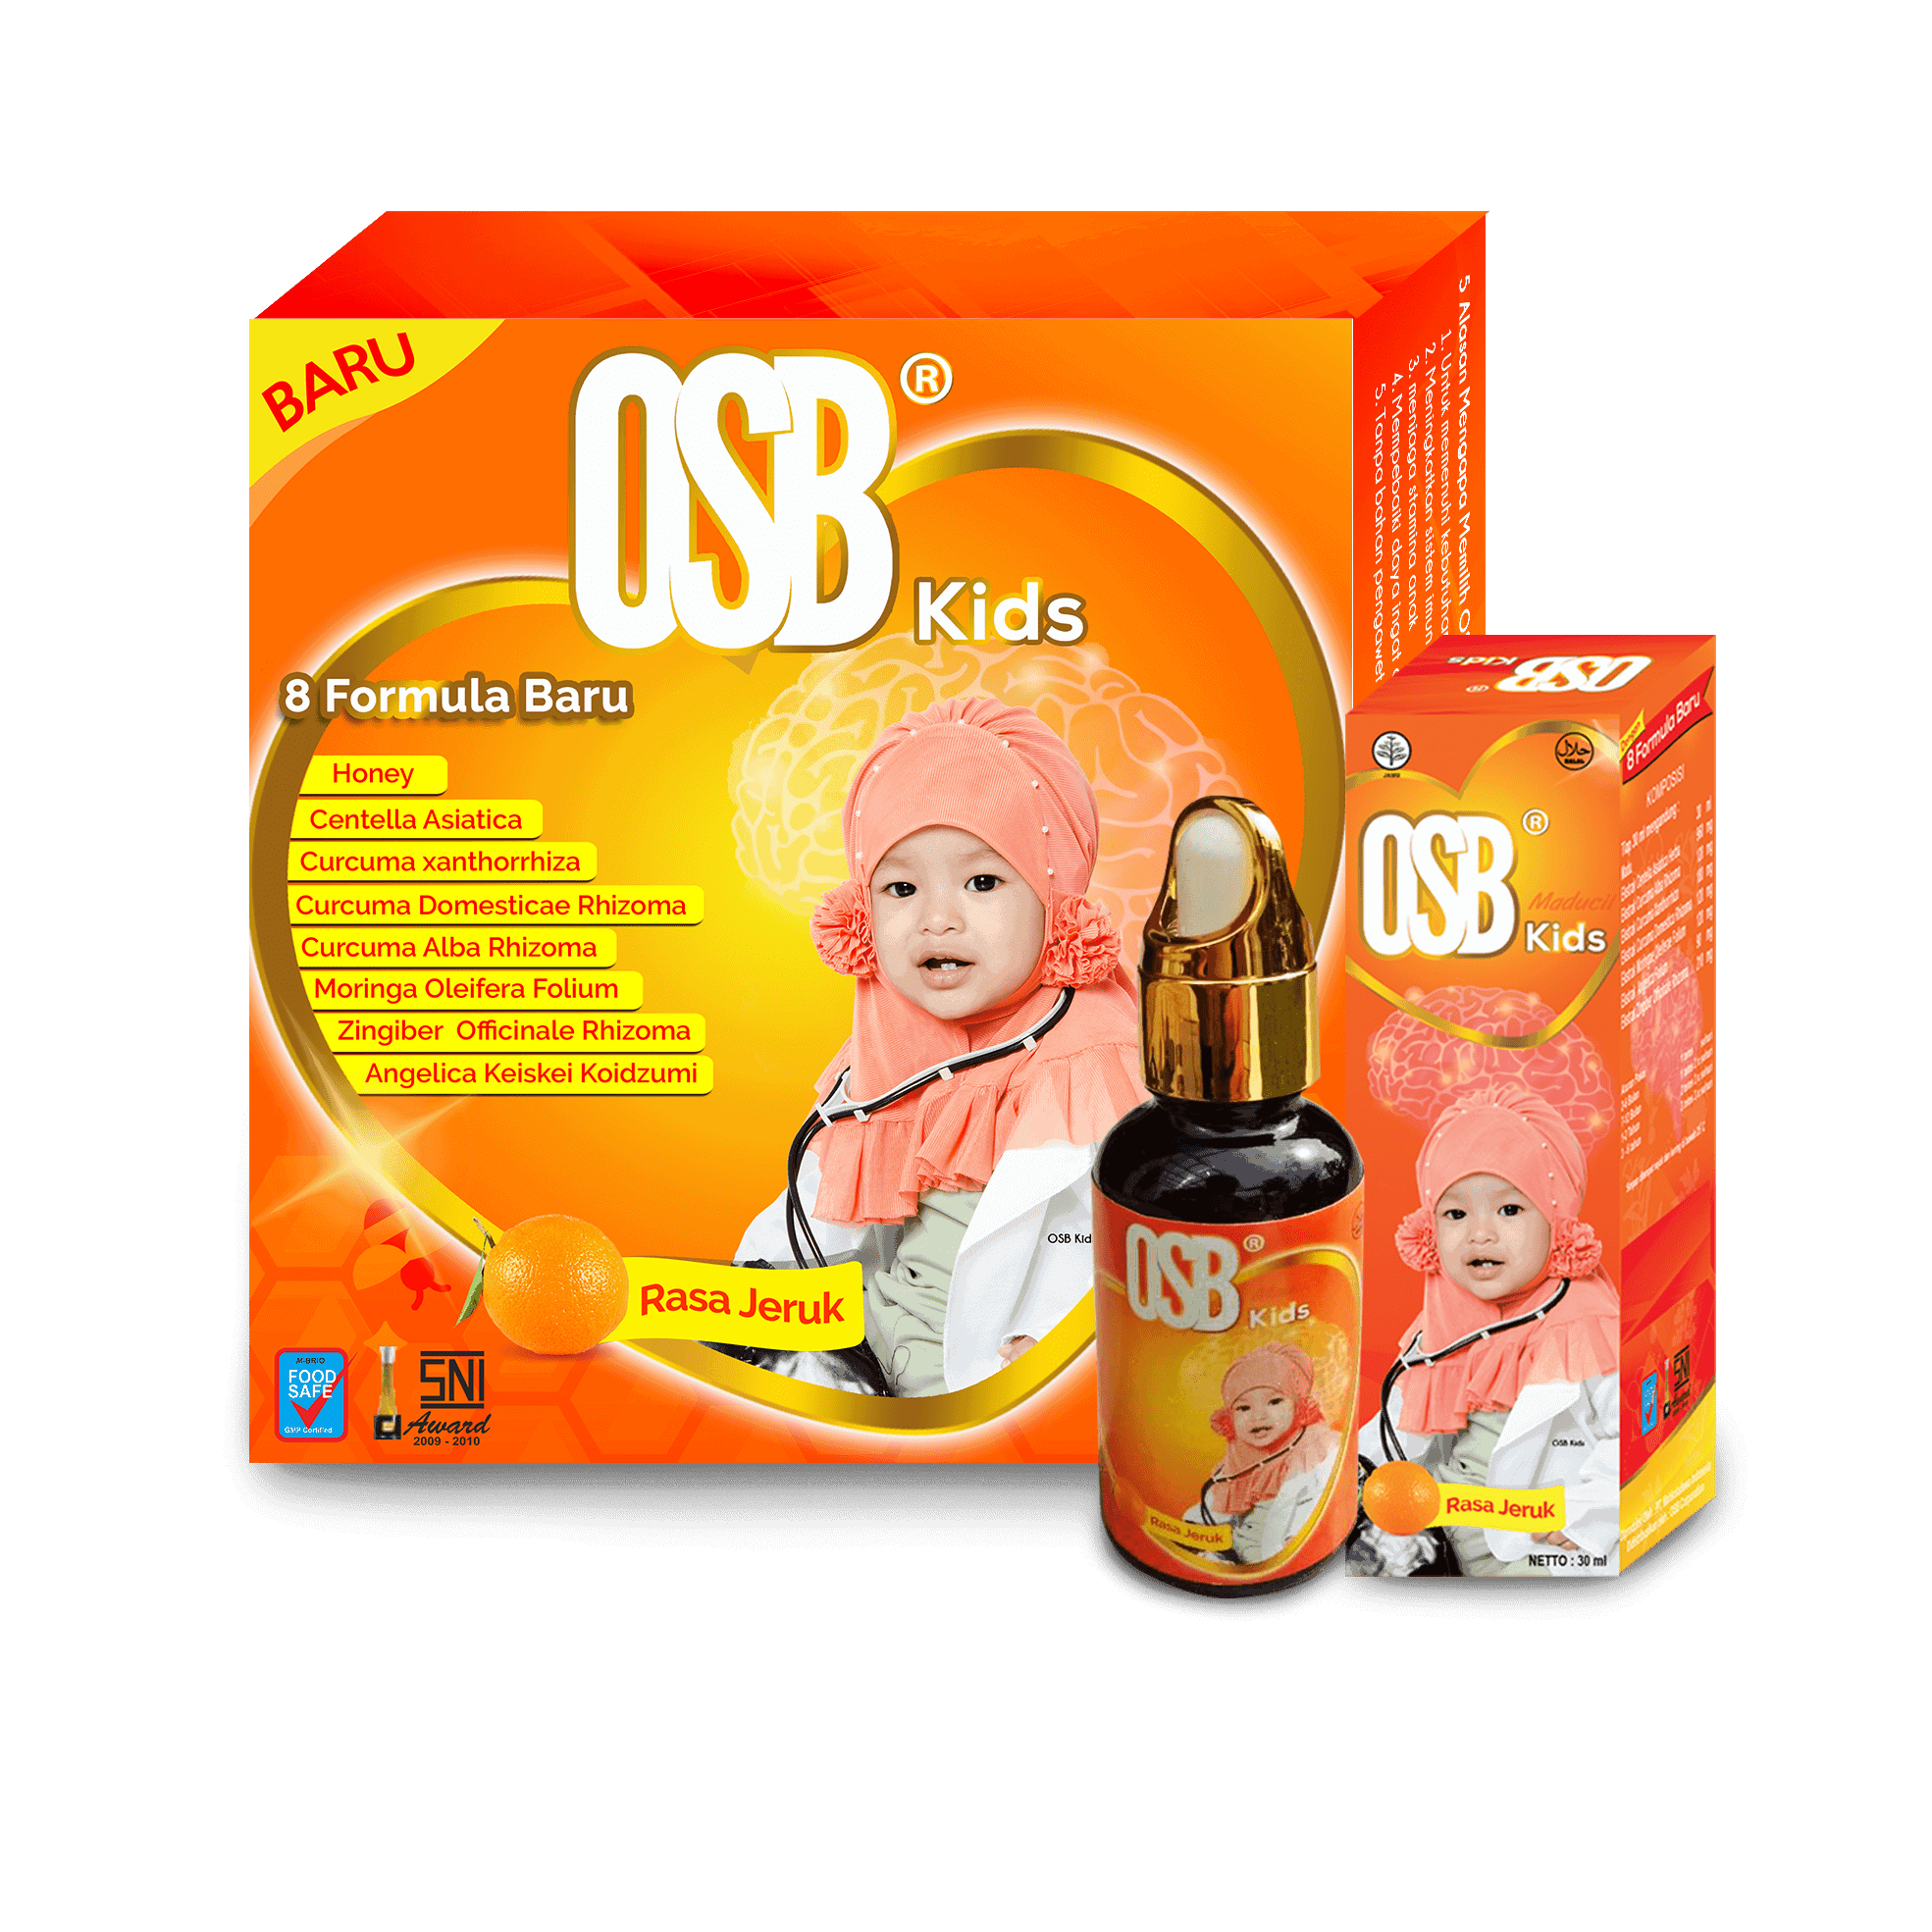 OSB-Kids-2.png